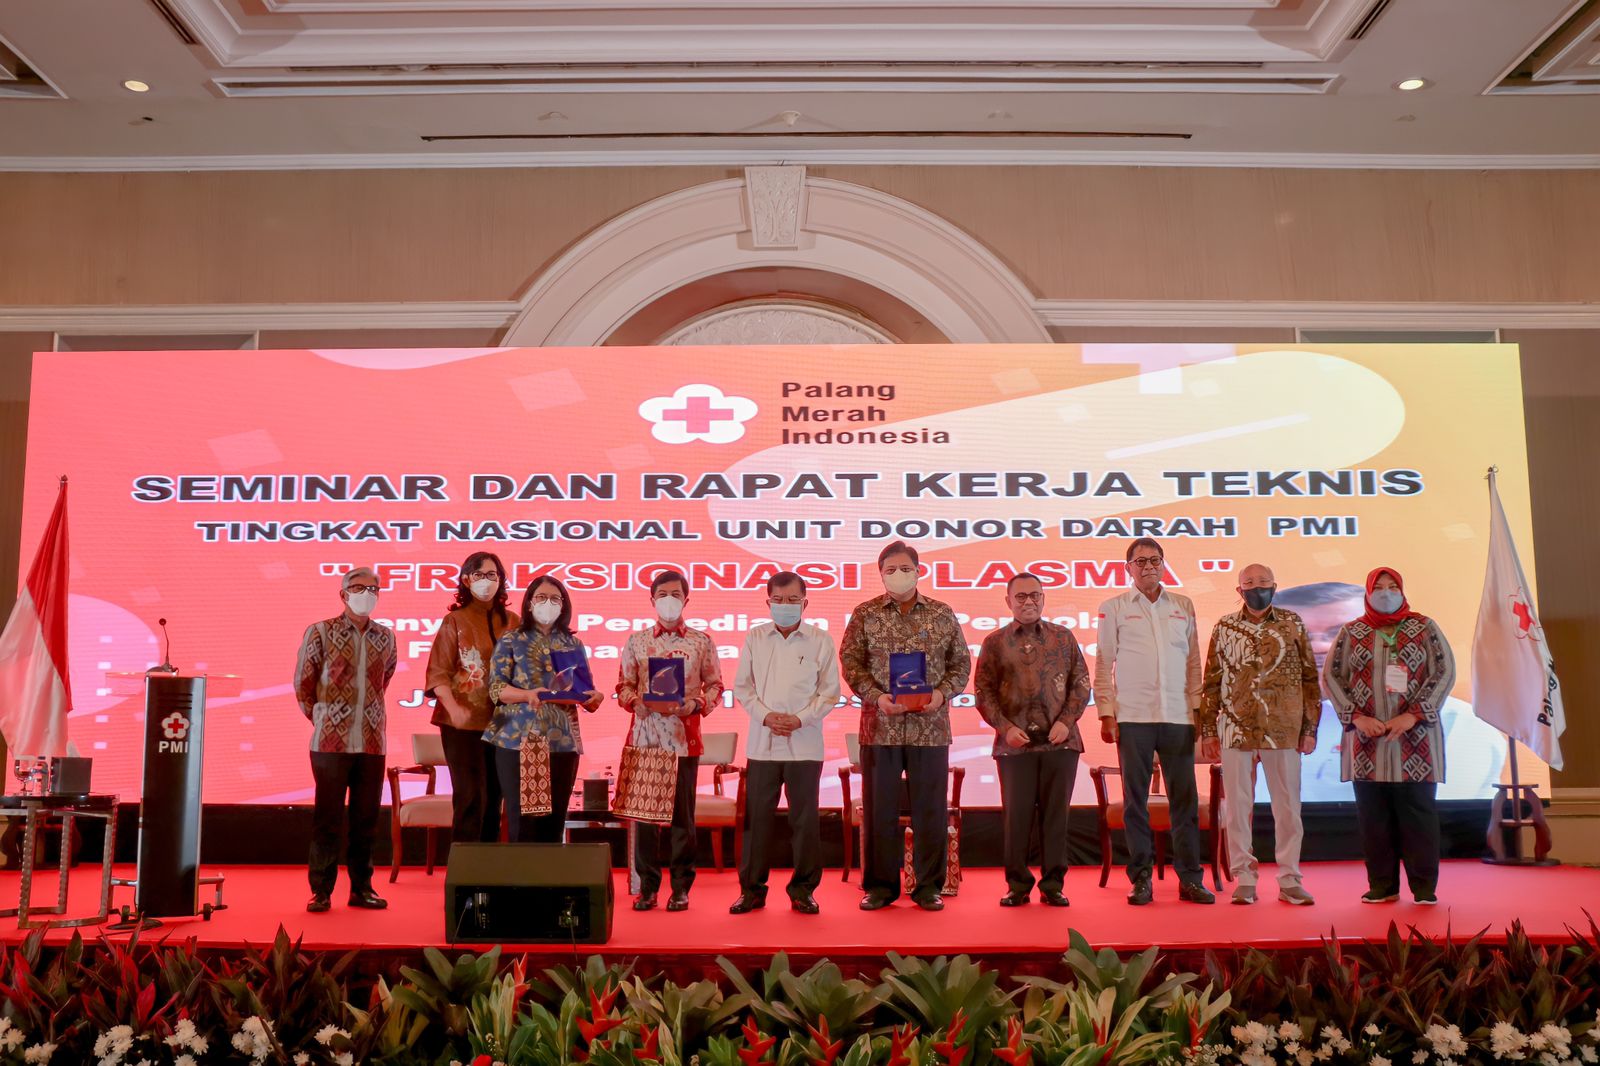 Seminar dan Rapat Kerja Teknis Tingkat Nasional Unit Donor Darah Palang Merah Indonesia (UDD PMI) dengan tema “Fraksionasi Plasma” di Jakarta, Selasa 14 Desember 2021.